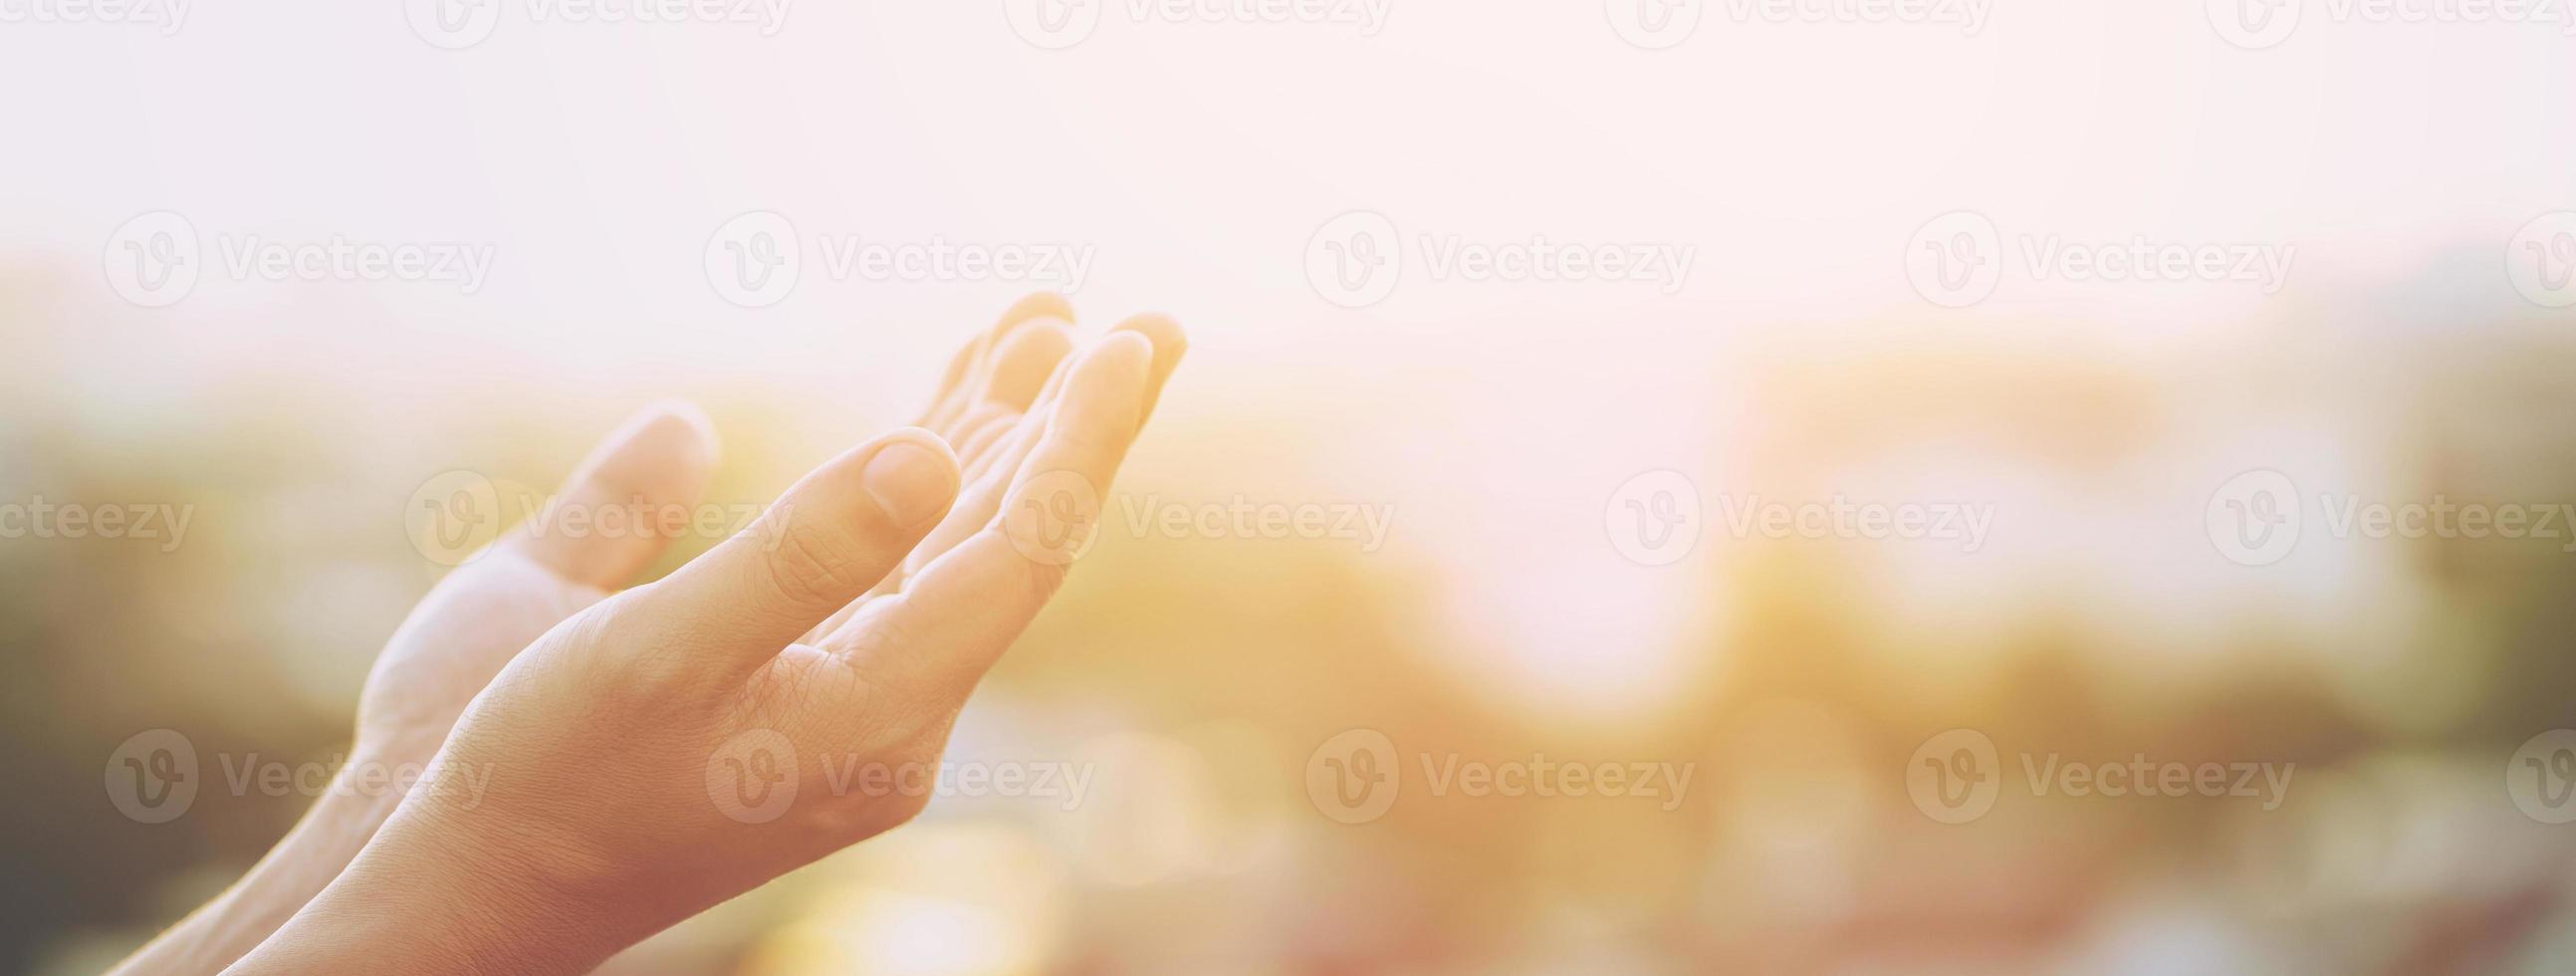 betender Mann, der auf Besserung hofft. Gott um Glück, Erfolg, Macht der Religion, Glauben, Anbetung bitten. Händchen haltend im Gebet zusammengestellt, Konzept Glauben Spiritualität. oder hallo grüßen. foto